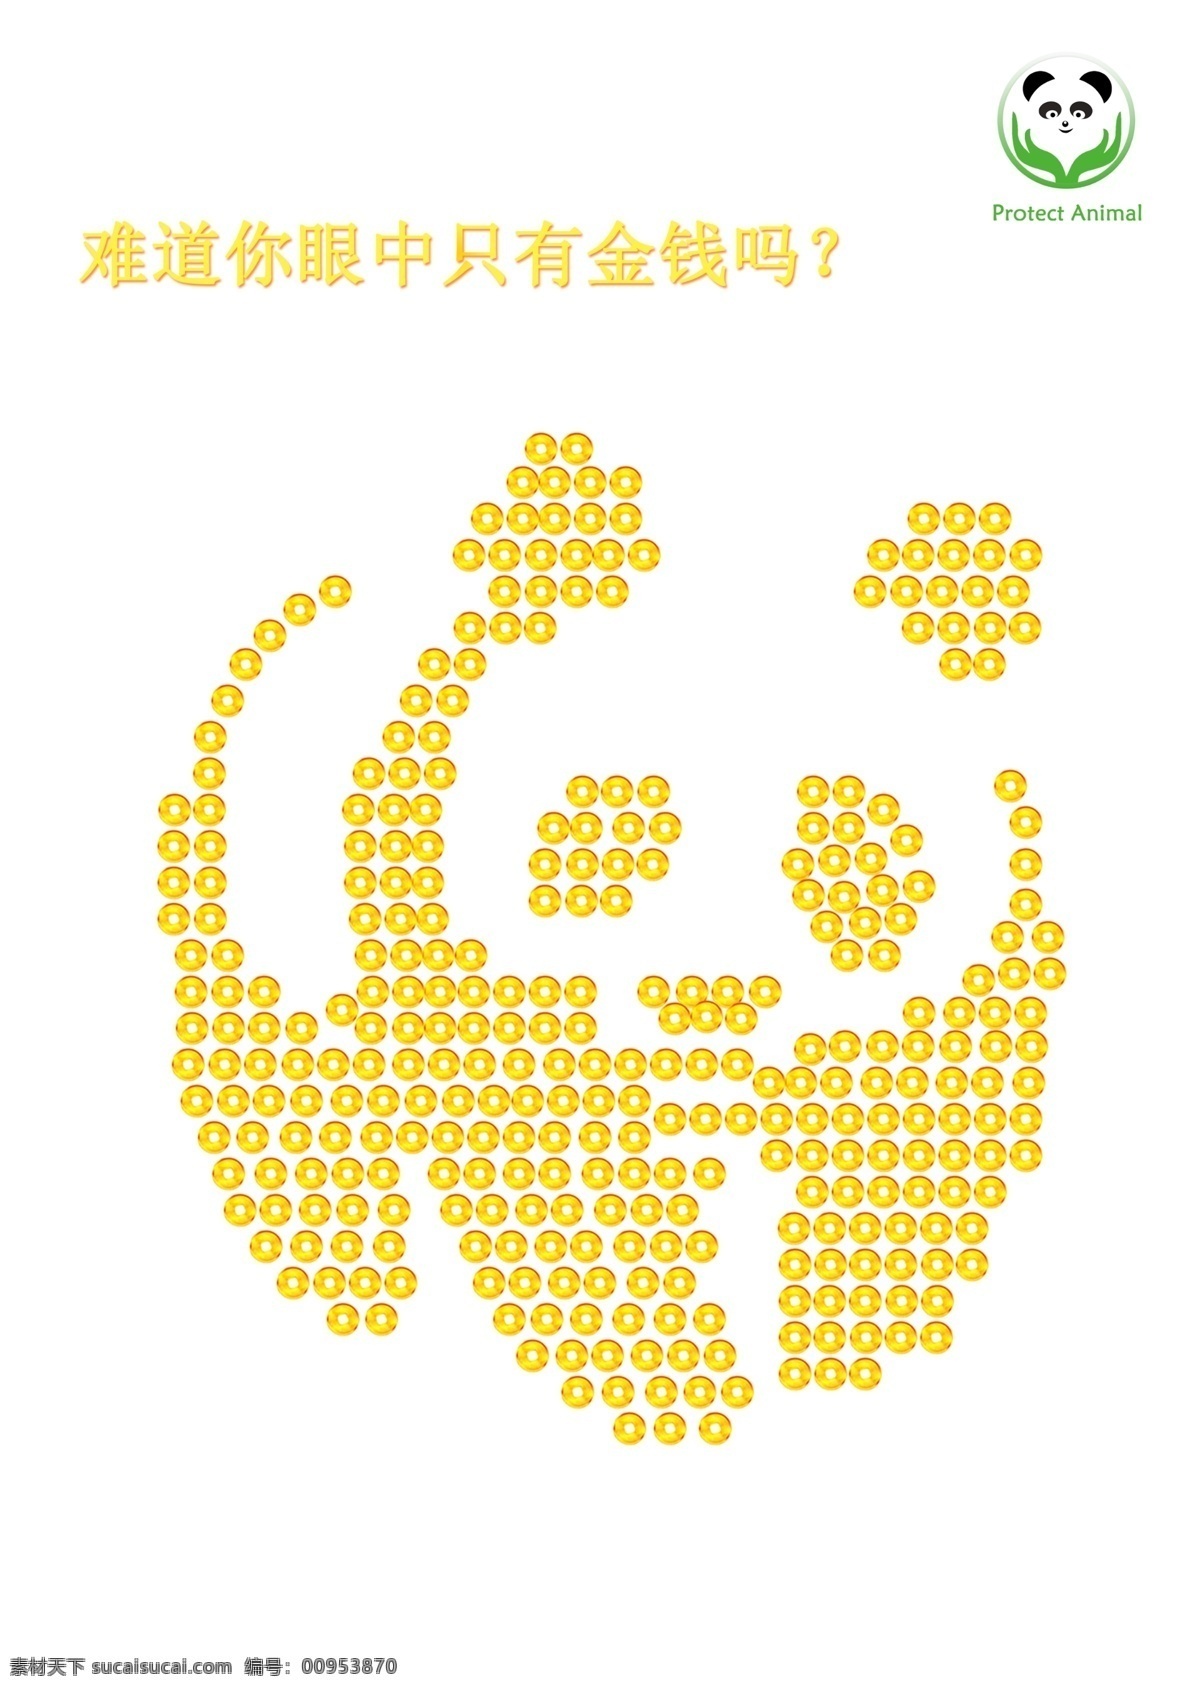 2013年 psd格式 保护动物 公益广告 广告设计模板 源文件 作业 保护 动物 模板下载 保护熊猫 环保公益海报